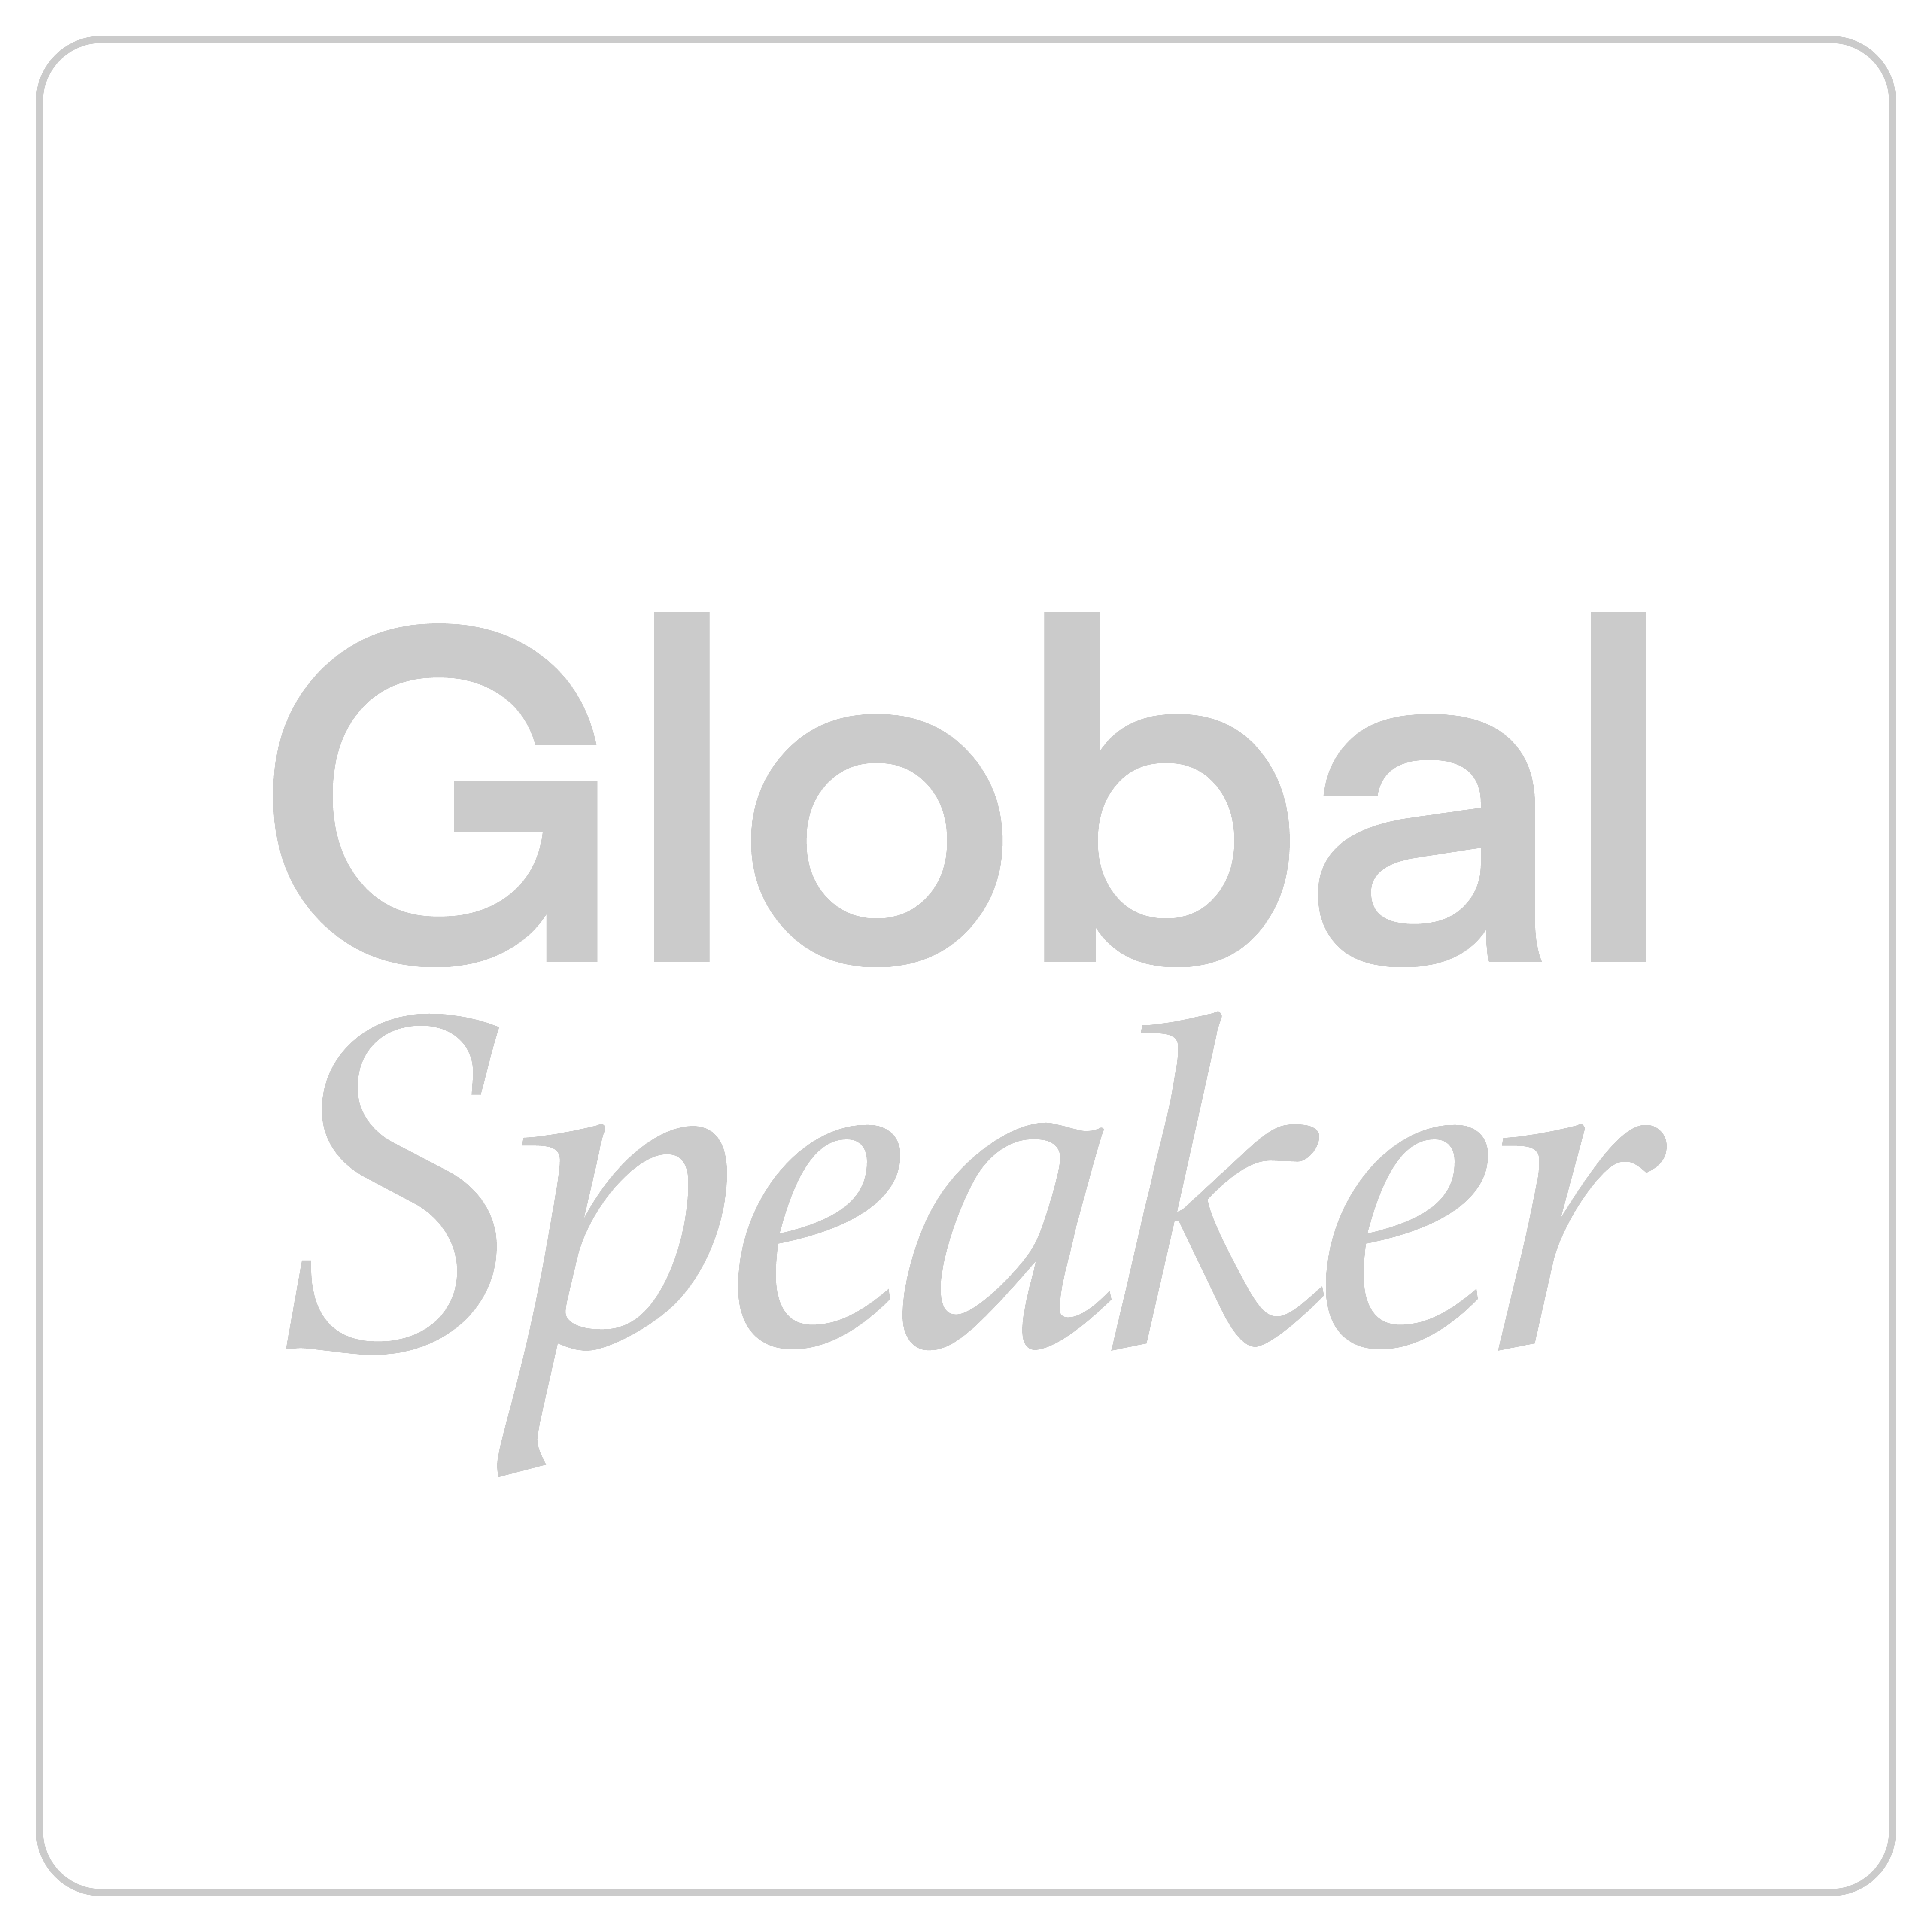 Global Speaker | Erik Kruger